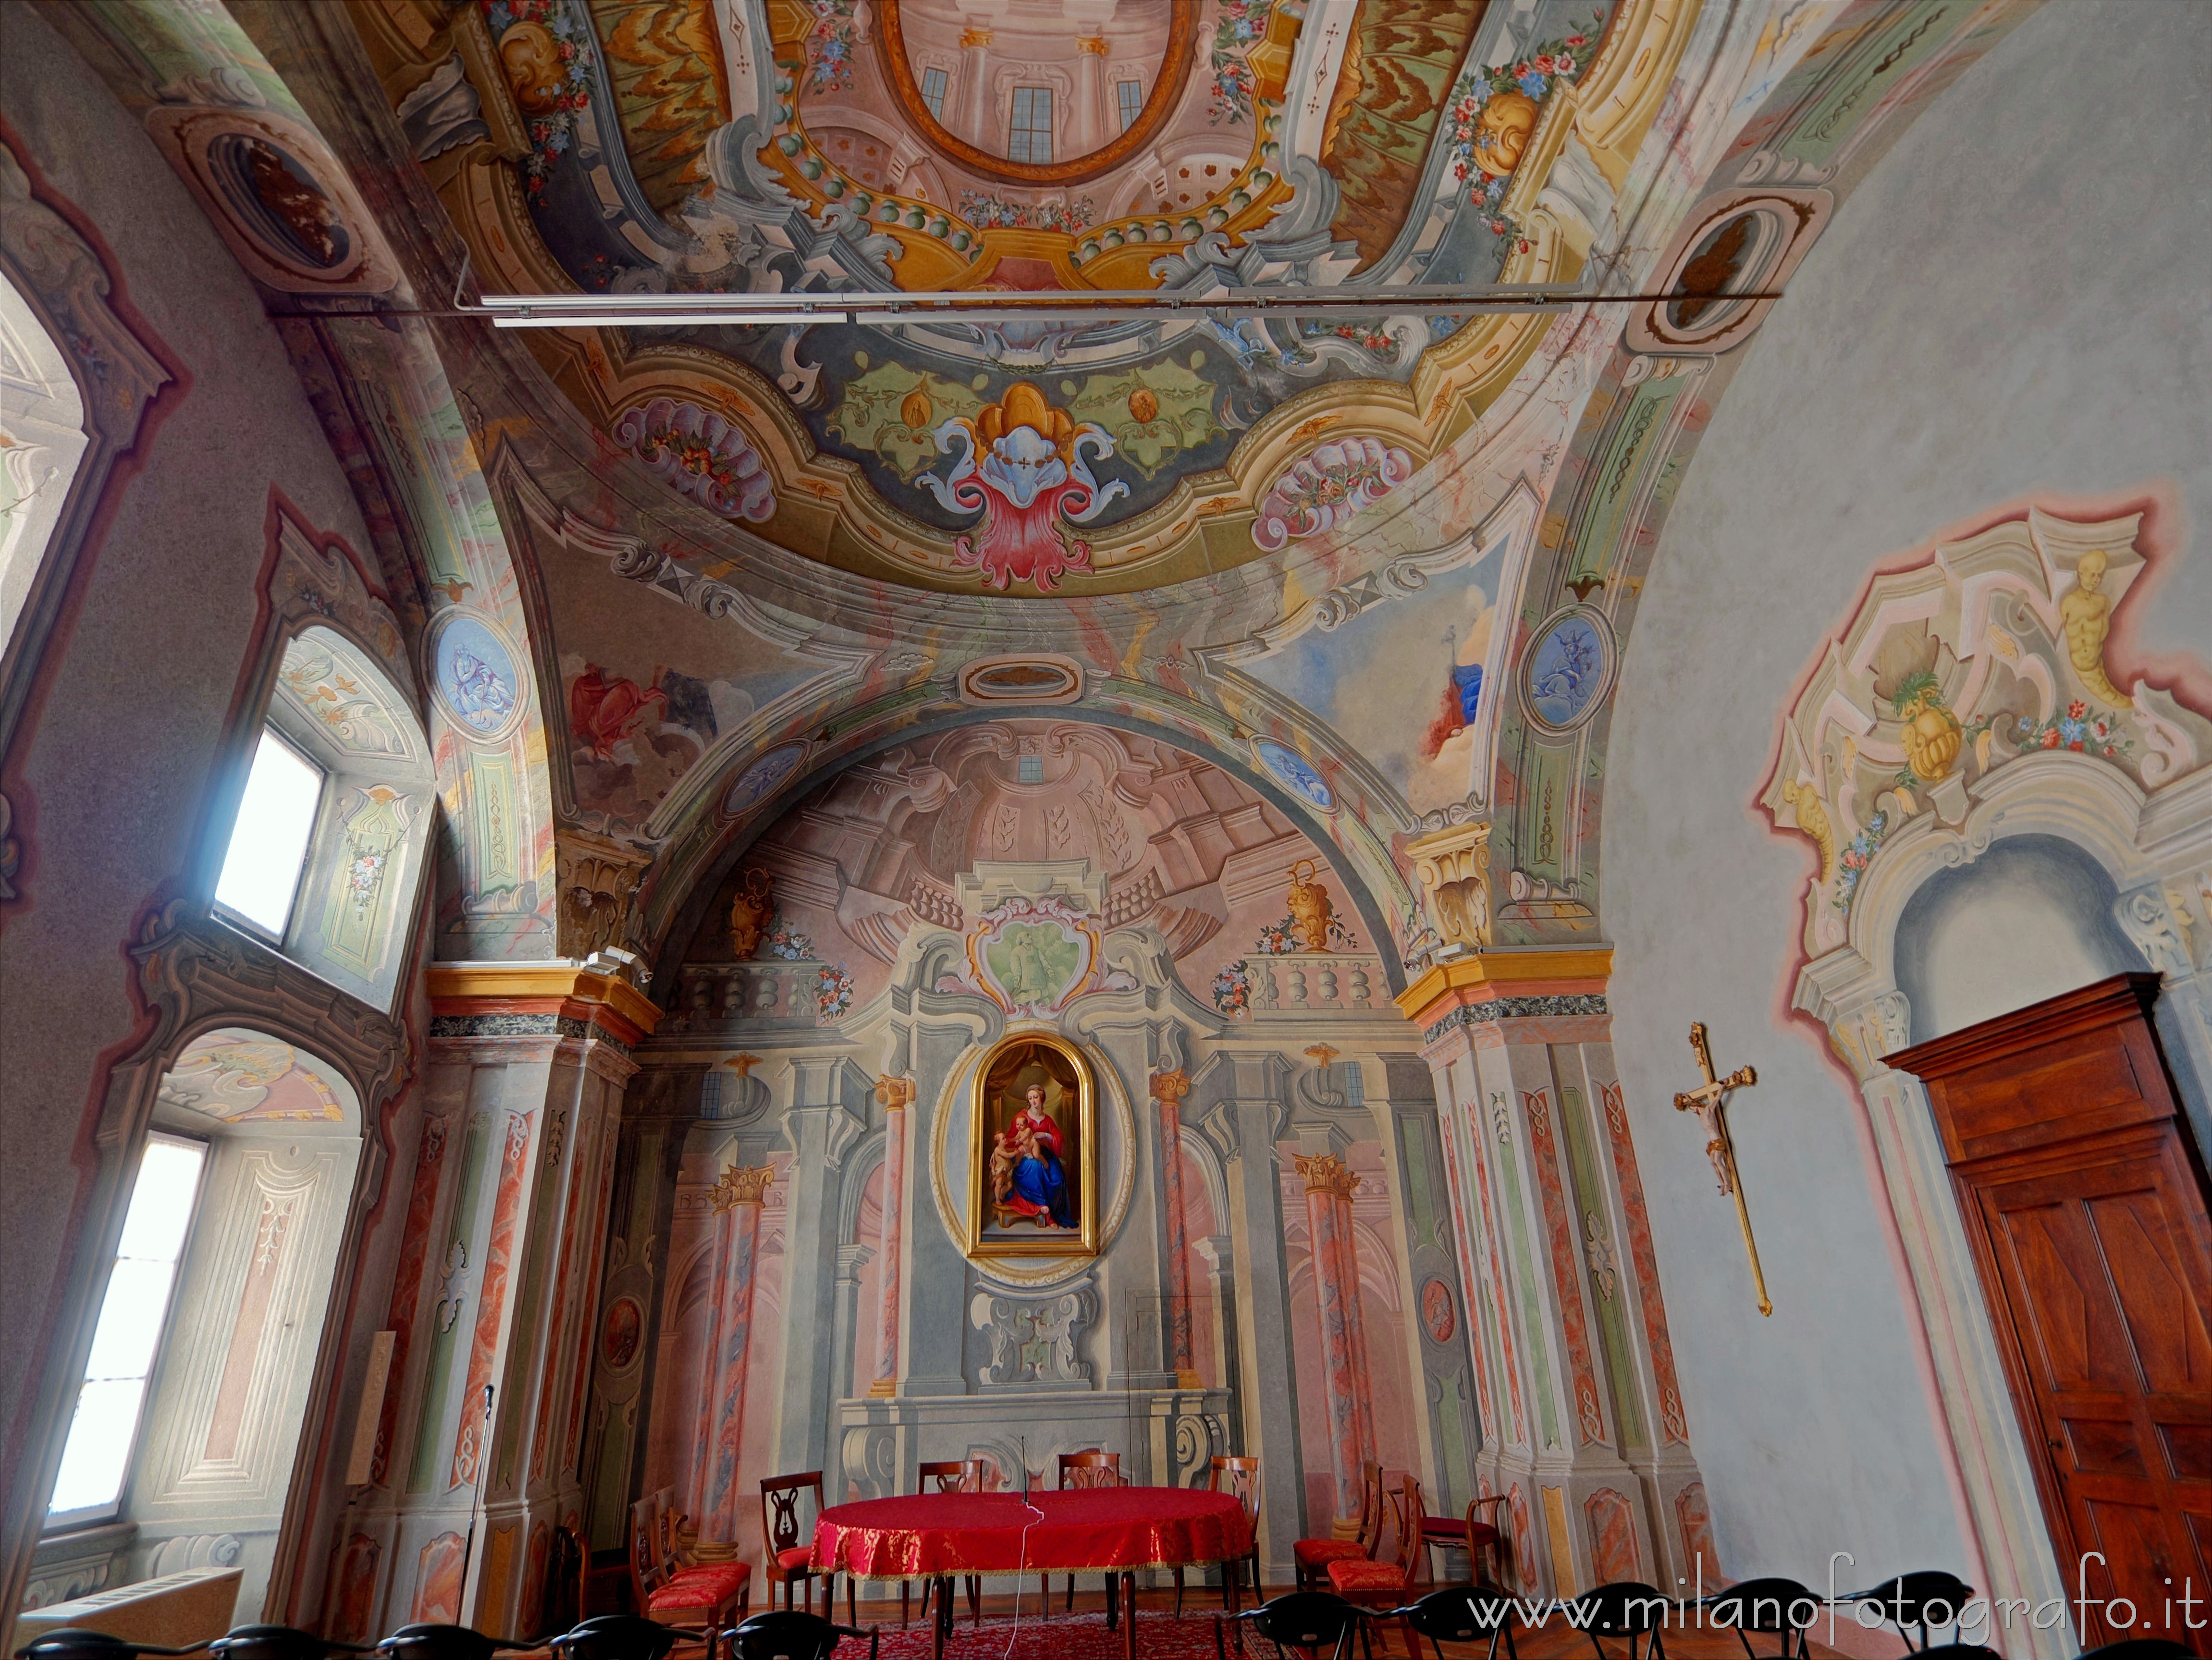 Graglia (Biella, Italy): Chapel of the Exercises of the Sanctuary of the Virgin of Loreto - Graglia (Biella, Italy)